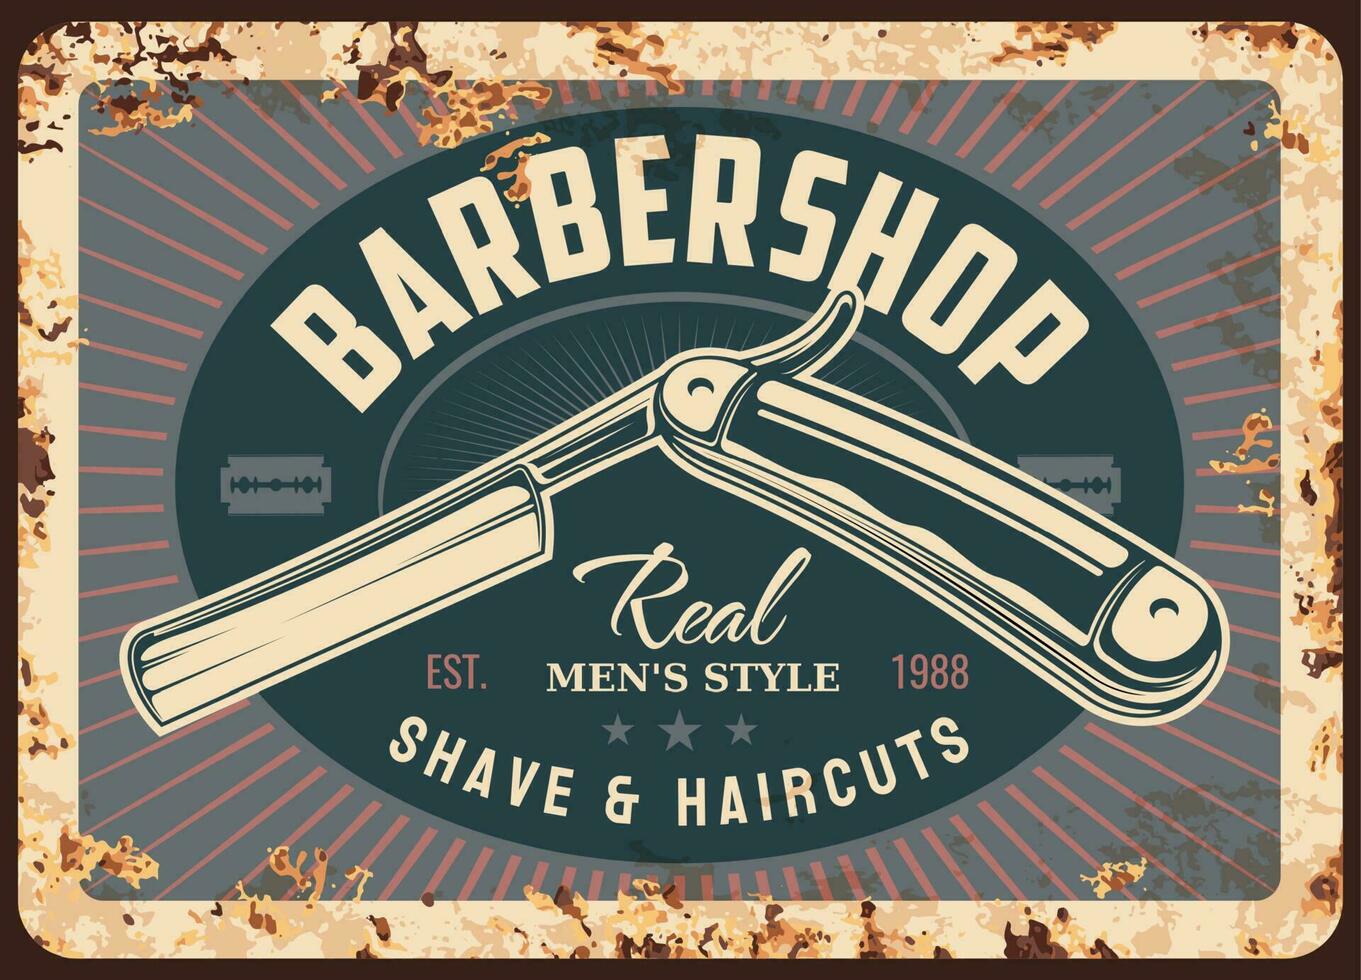 Barbero tienda metal oxidado lámina, barbería maquinilla de afeitar vector